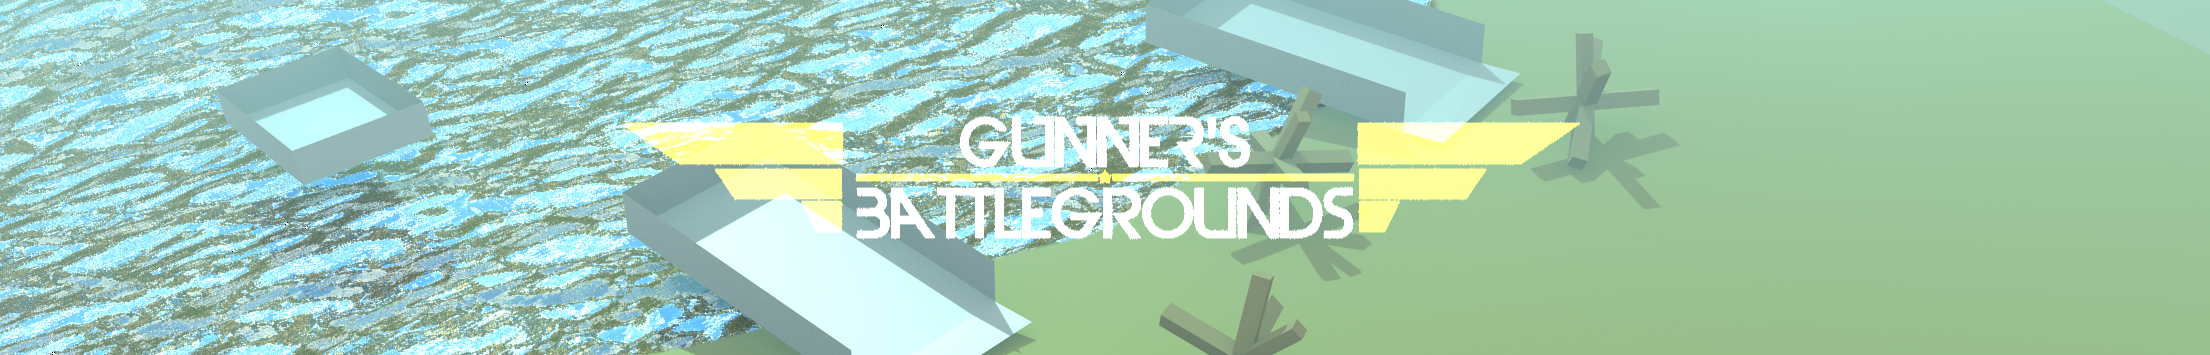 Gunner's BattleGrounds